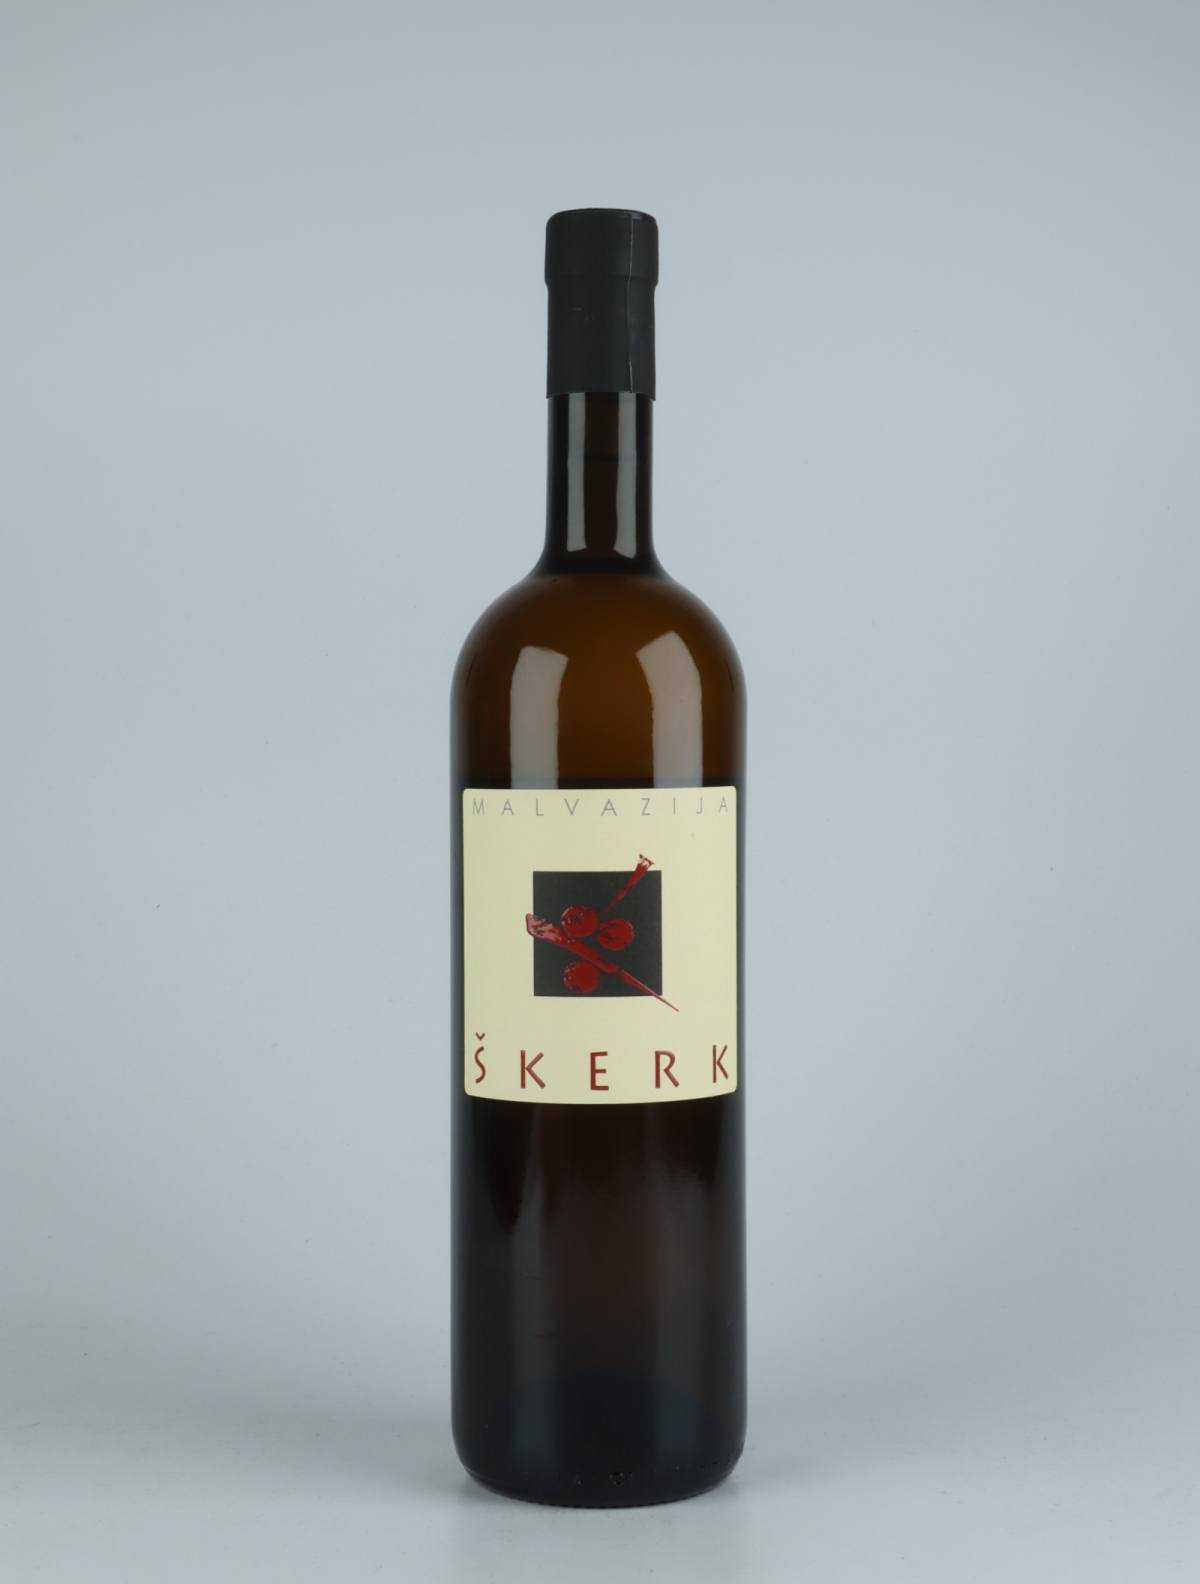 En flaske 2019 Malvazija Orange vin fra Skerk, Friuli i Italien